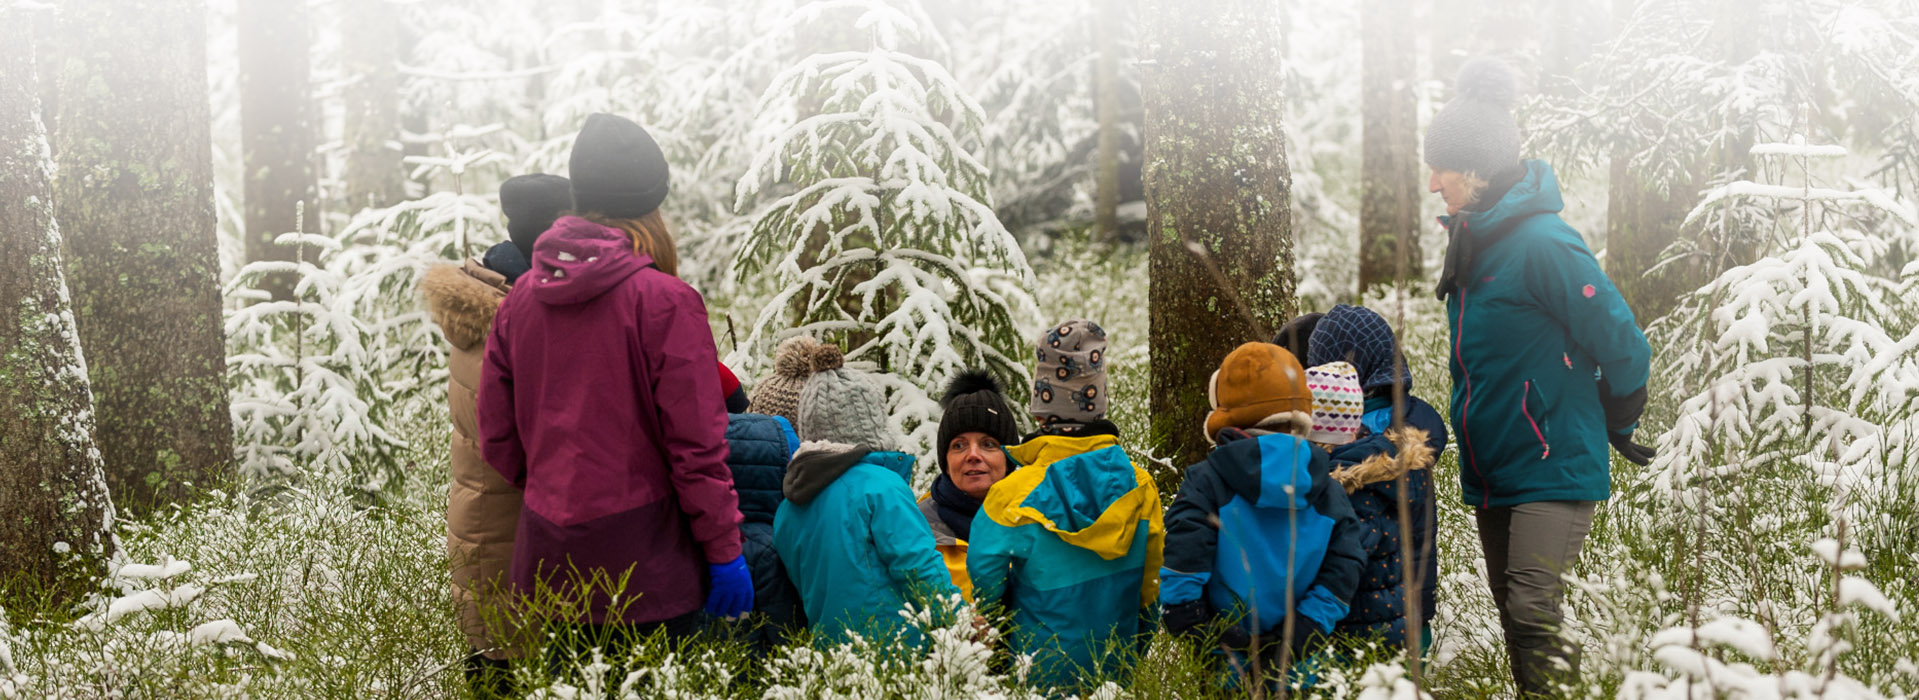 Kindergartenkinder und Erzieher stehen im Kreis in einer Winterlandschaft © Luis Scheuermann (Nationalpark Schwarzwald)